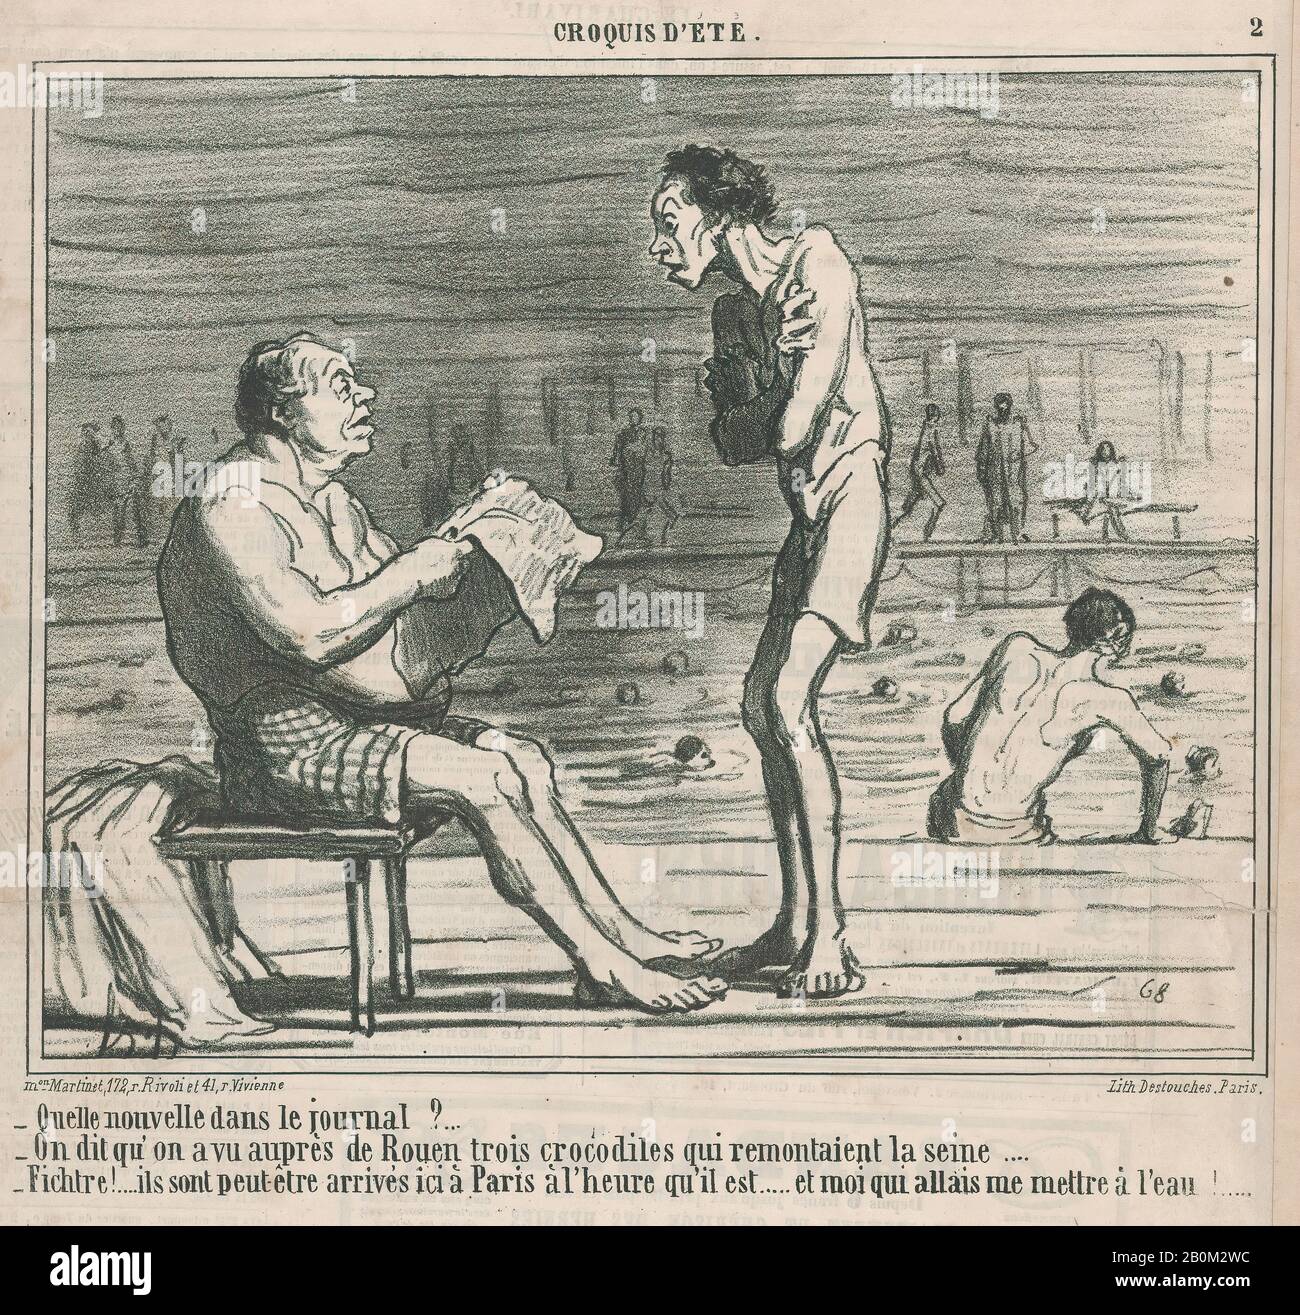 Honoré Daumier, quelle nouvelle dans le journal?, di Croquis d'Été, pubblicato in le Charivari, 5 agosto 1859, Croquis d'Été, Honoré Daumier (francese, Marsiglia 1808–1879 Valmondois), 5 agosto 1859, litografia su carta da giornale; secondo stato (Delteil), immagine: 8 in × 1/2 10. (21,6 × 26,7 cm), foglio: 11 13/16 × 11 3/16 in. (30 × 28,4 cm), stampe Foto Stock